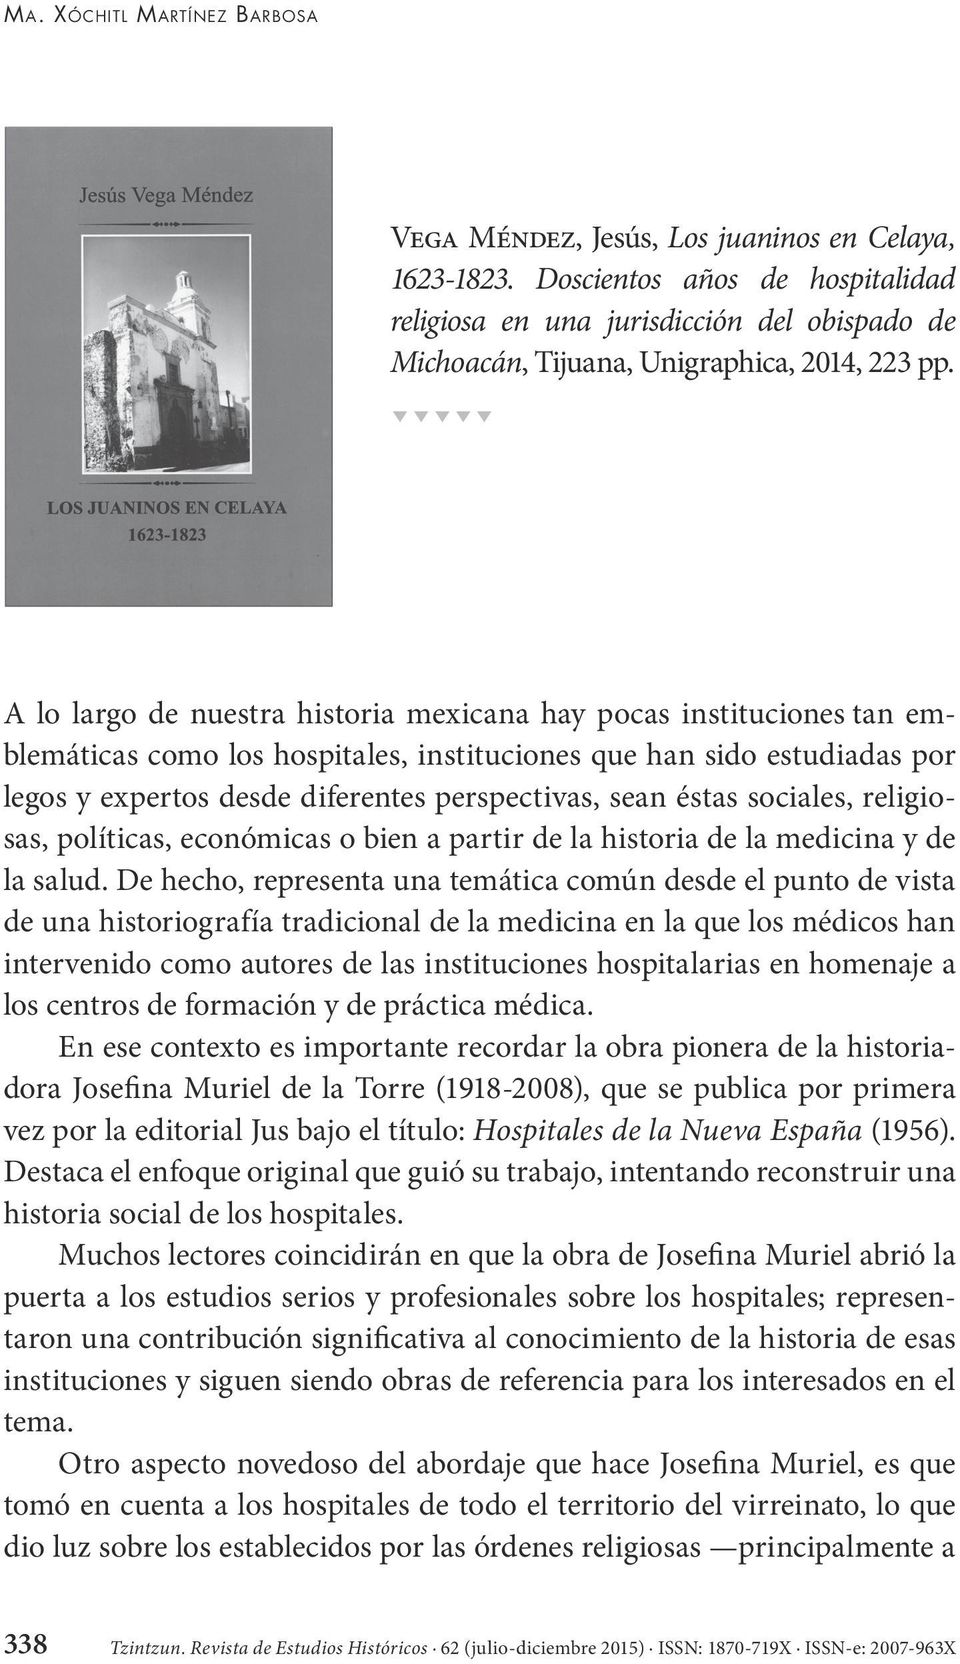 A lo largo de nuestra historia mexicana hay pocas instituciones tan emblemáticas como los hospitales, instituciones que han sido estudiadas por legos y expertos desde diferentes perspectivas, sean